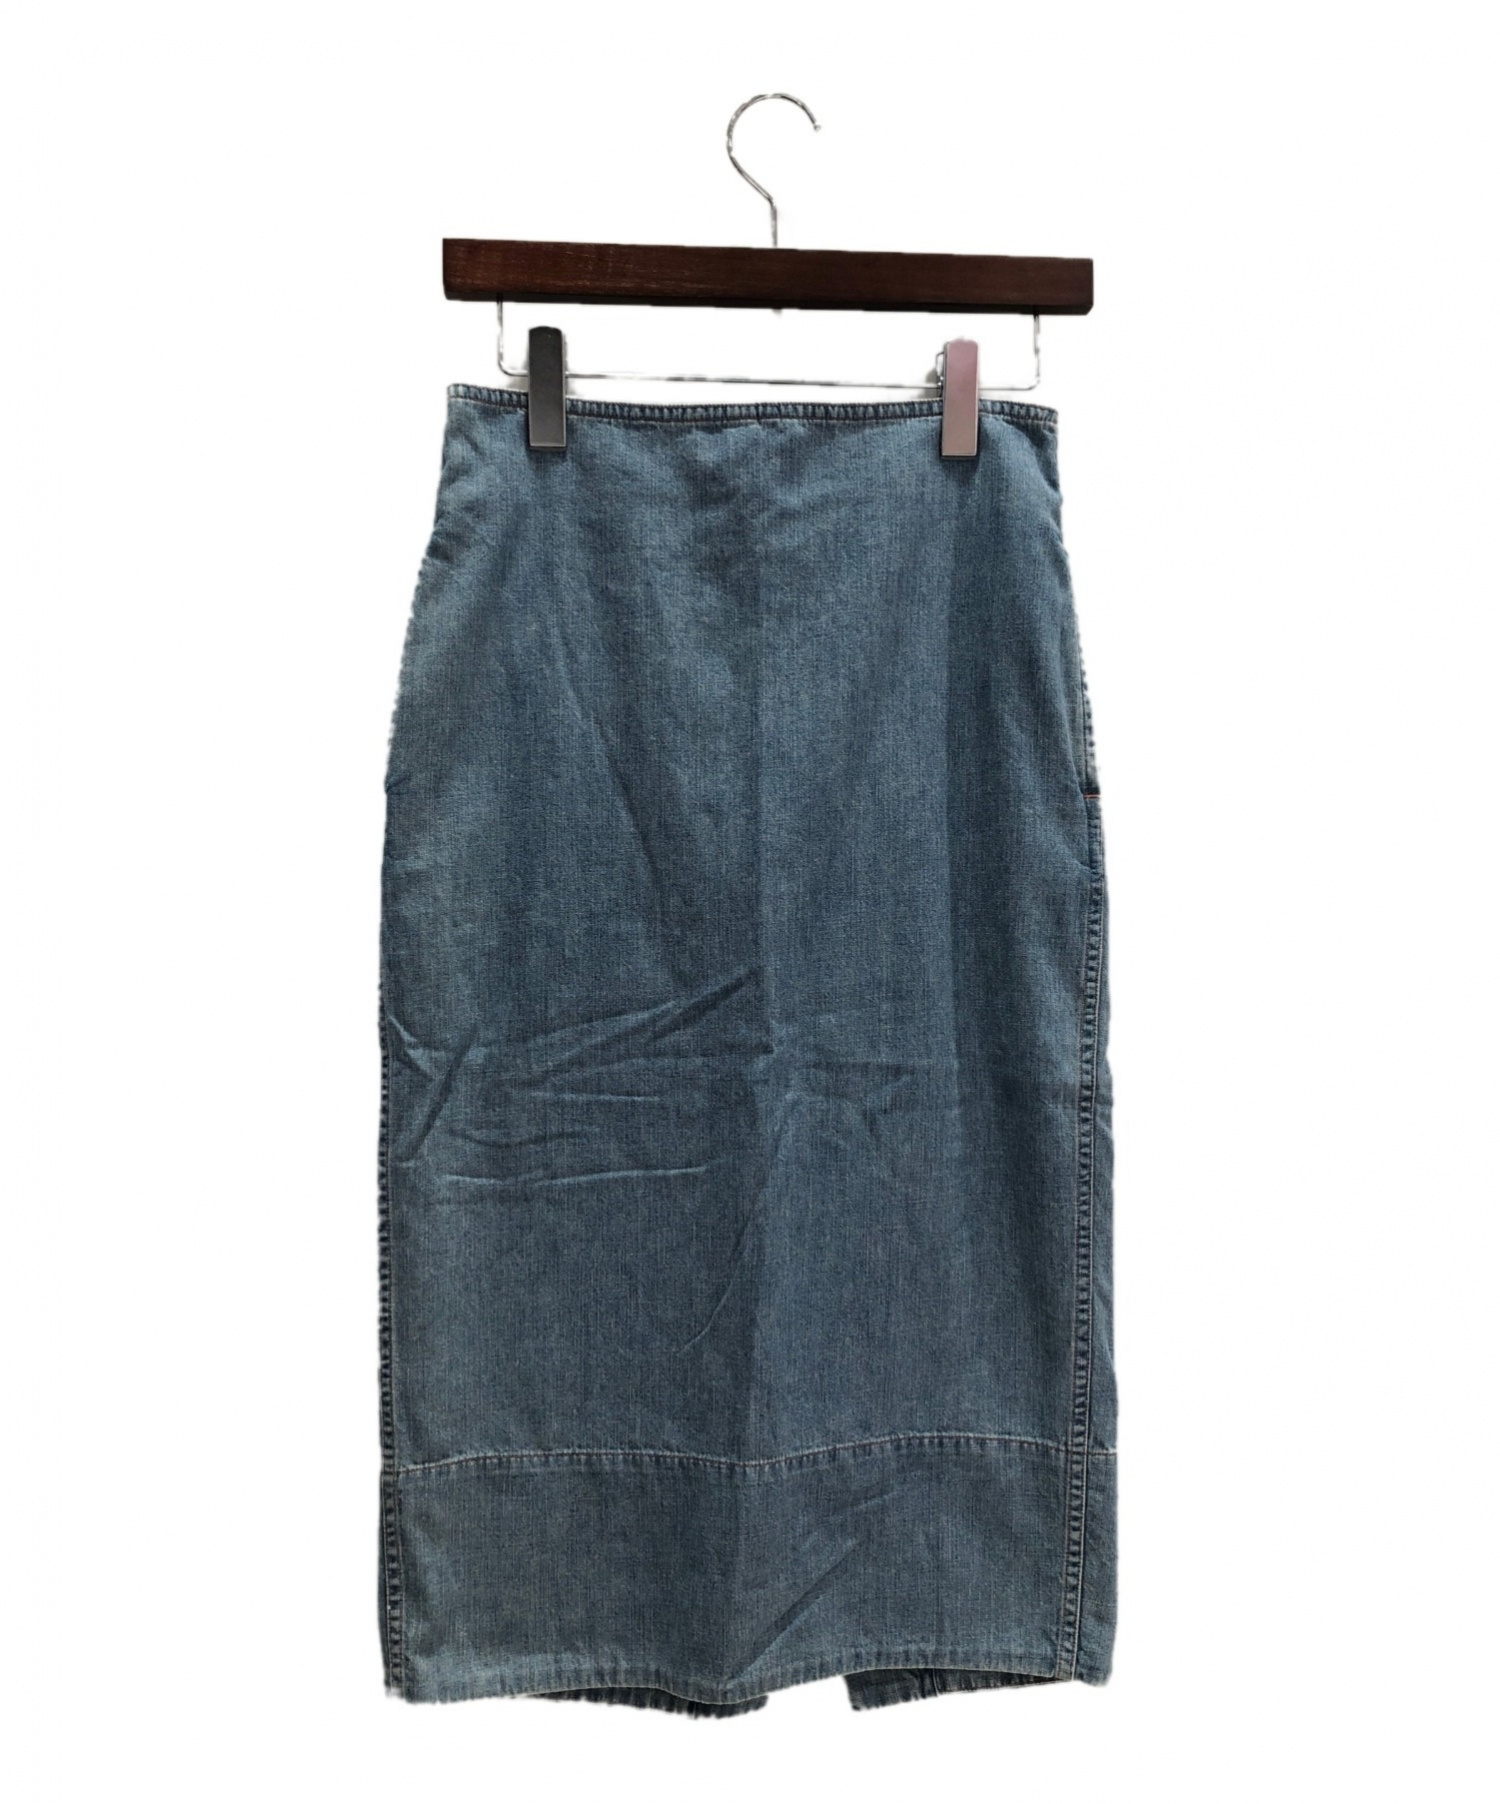 マディソンブルー スカート サイズS - www.gaspedecor.com